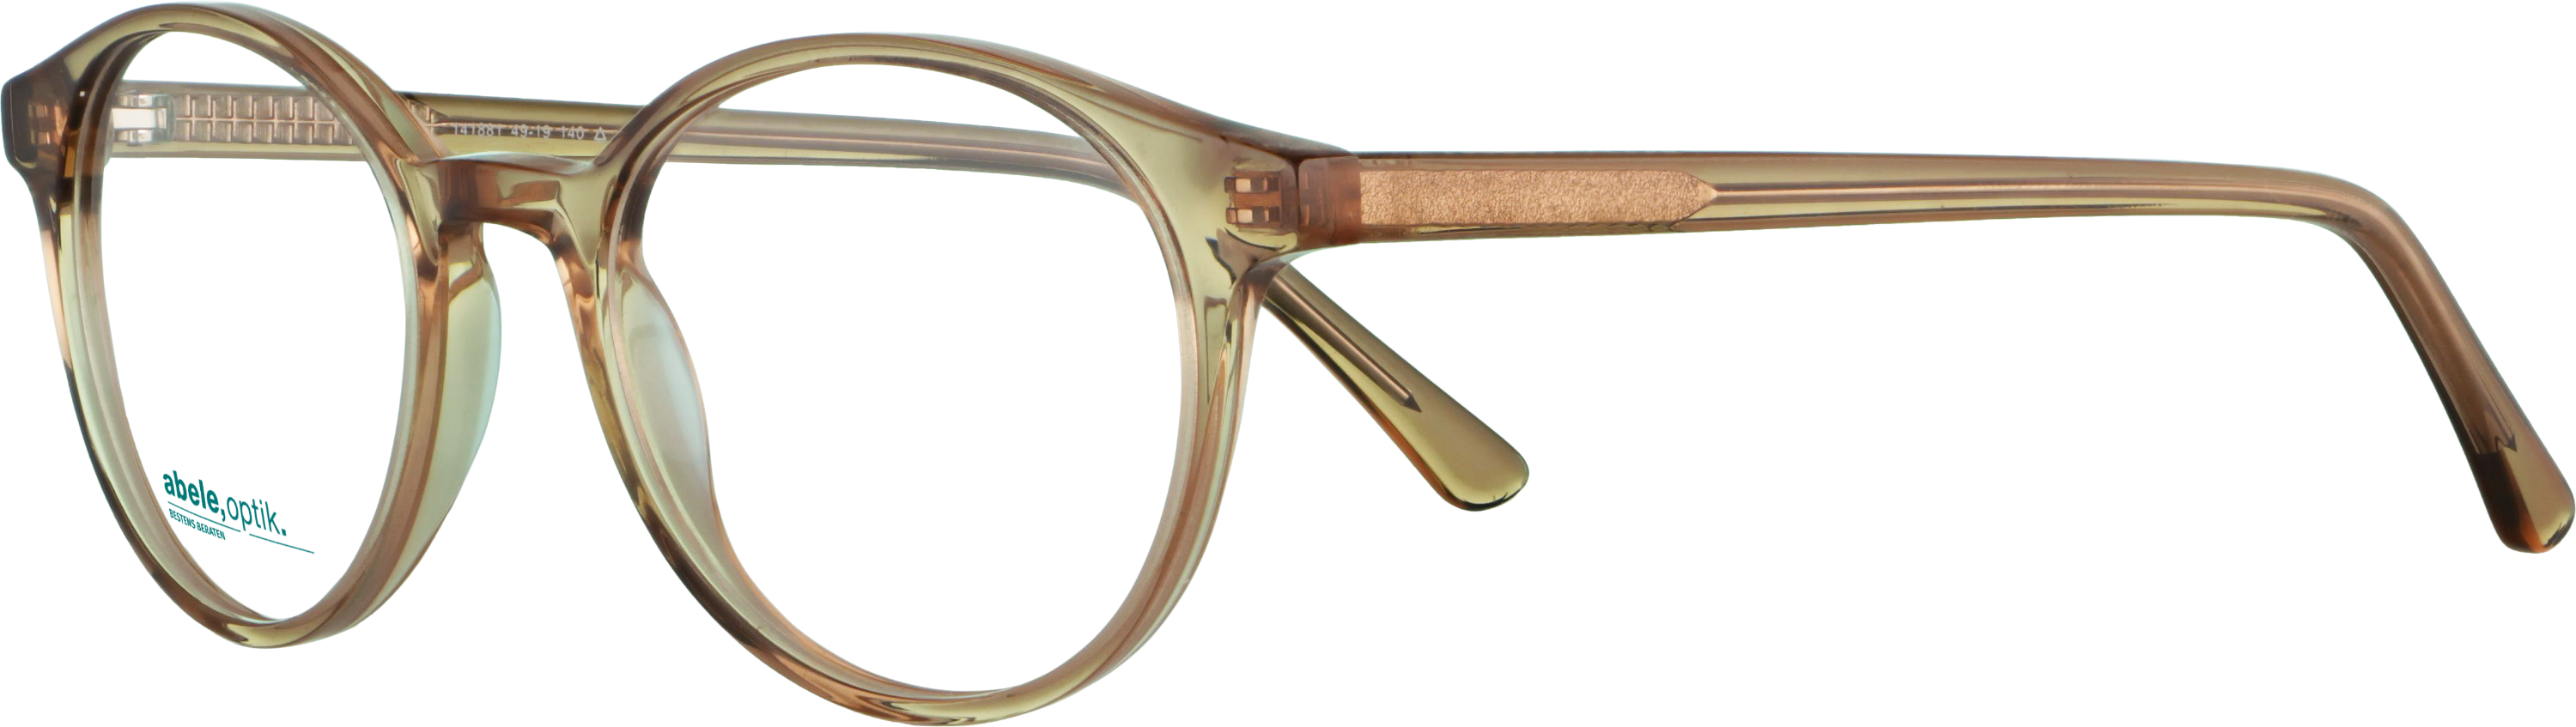 Das Bild zeigt die Korrektionsbrille 141881 von der Marke Abele Optik in nude.